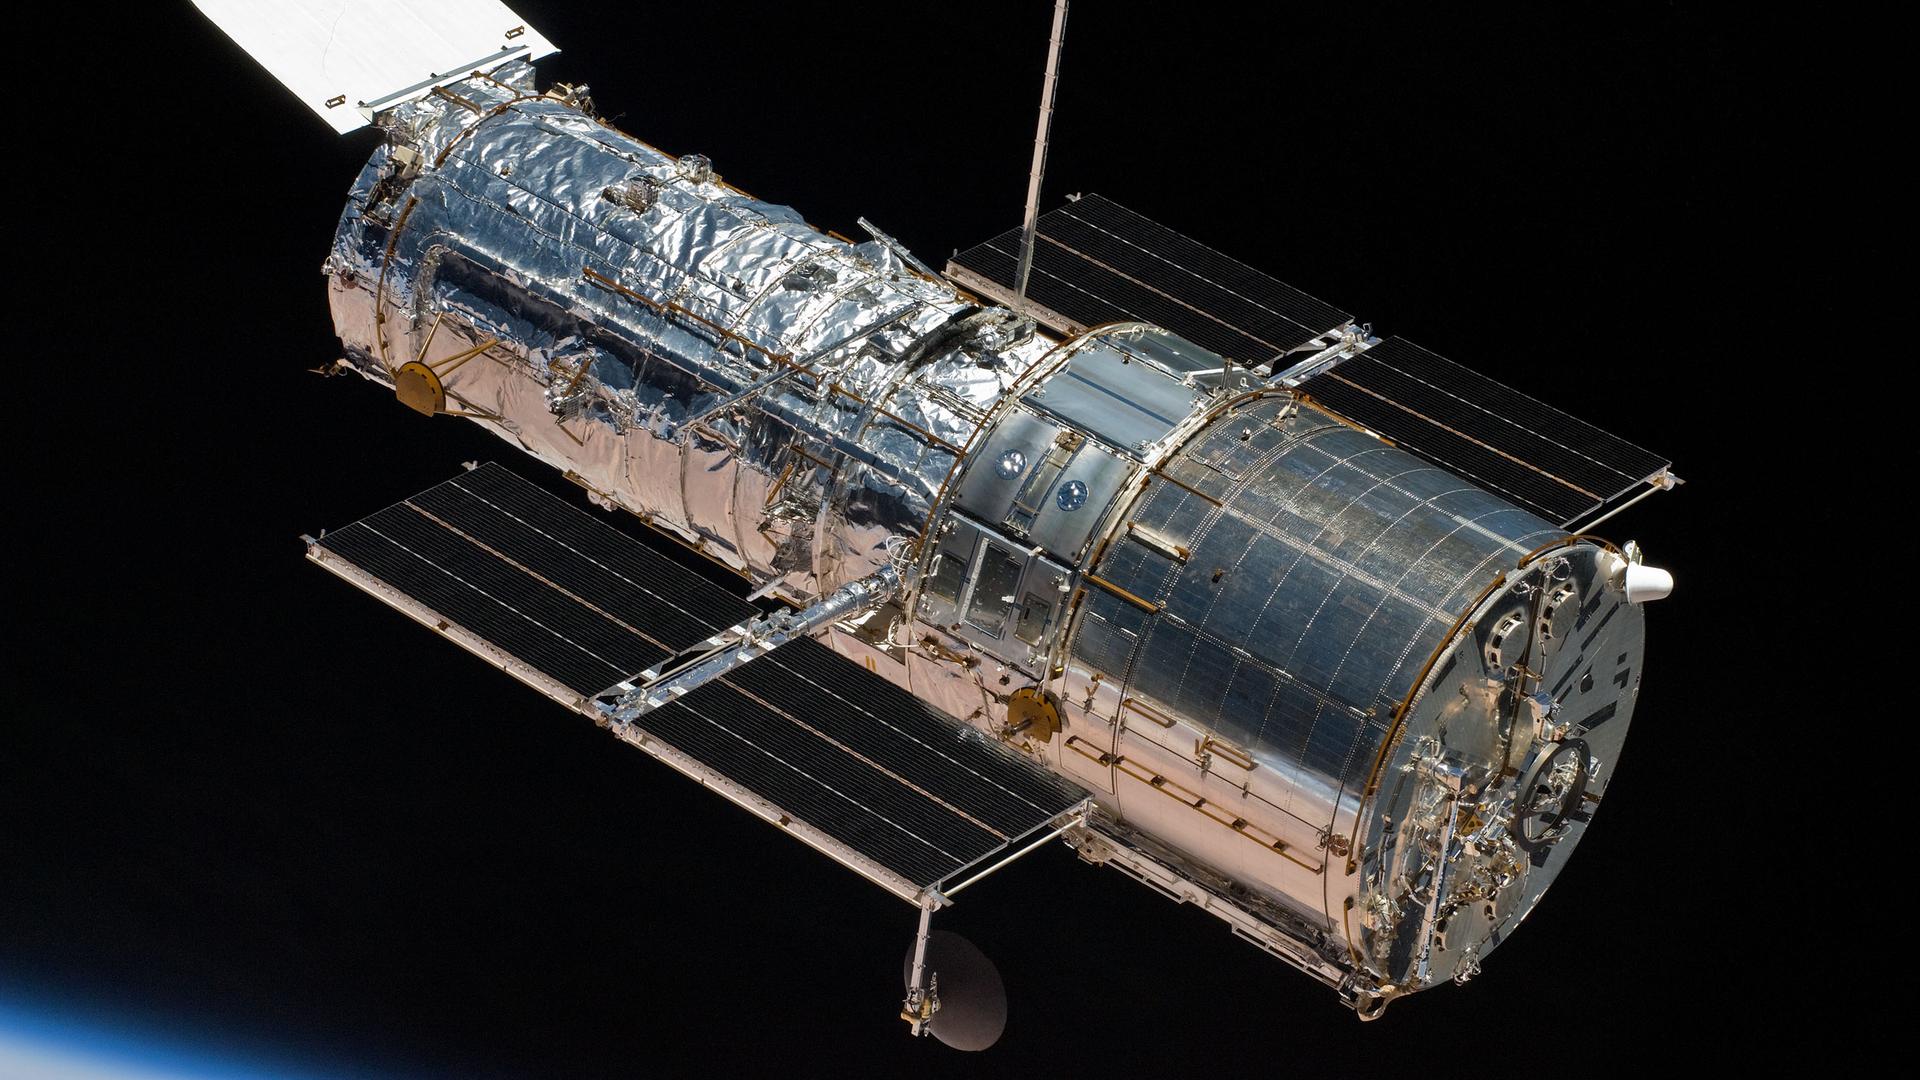 Seit mehr als 32 Jahren im Einsatz: das Hubble-Weltraumteleskop, aufgenommen nach der letzten Service-Mission 2009